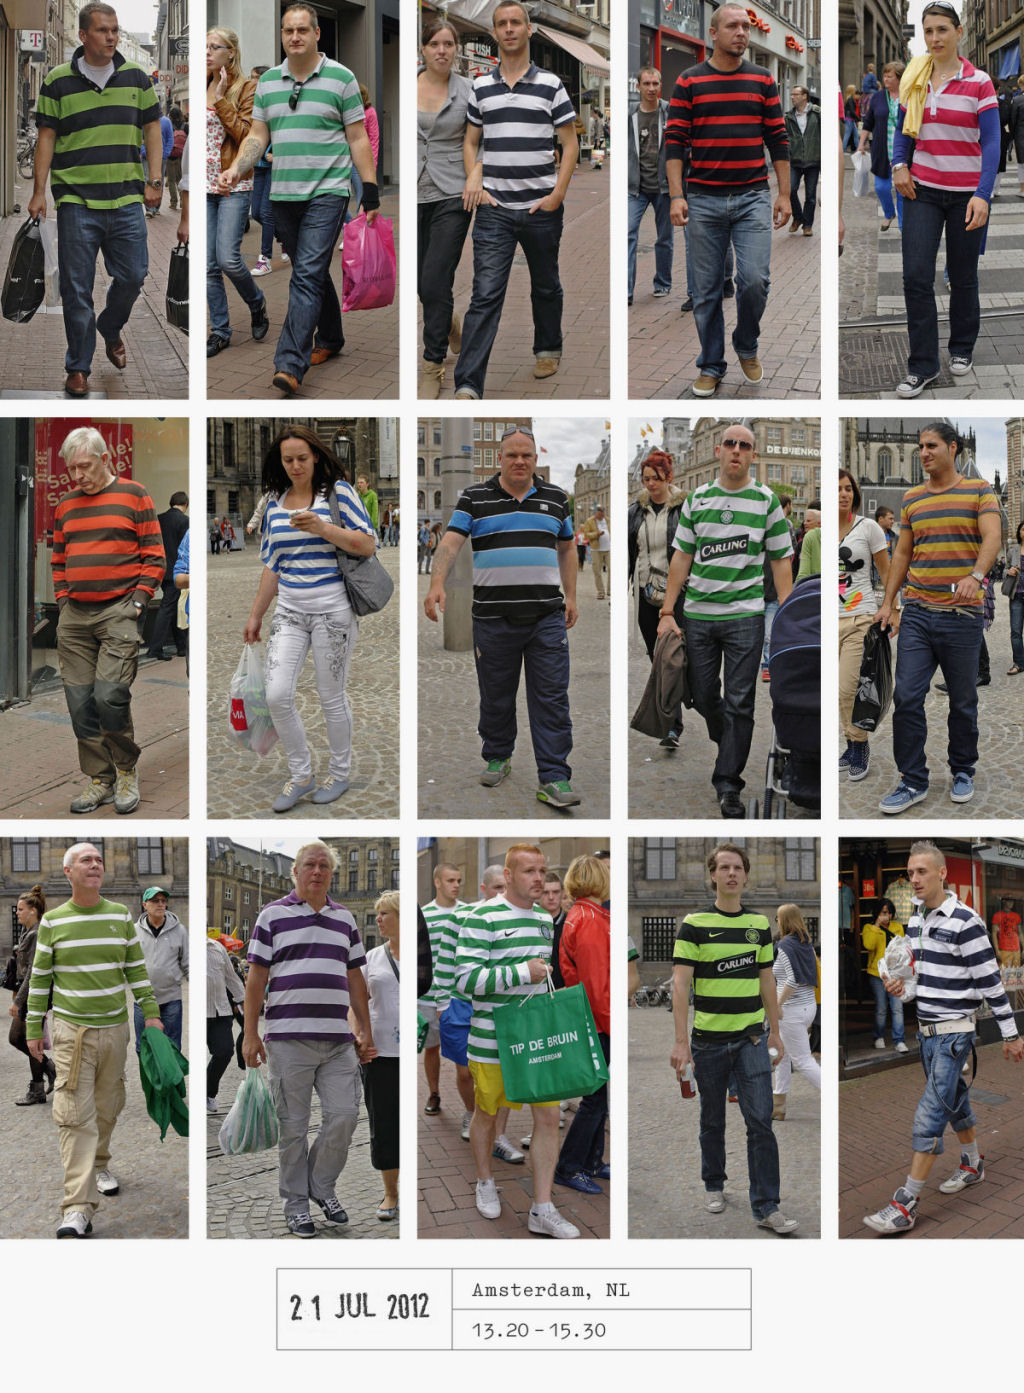 Este fotógrafo passou 20 anos documentando como todos nos vestimos iguais 10